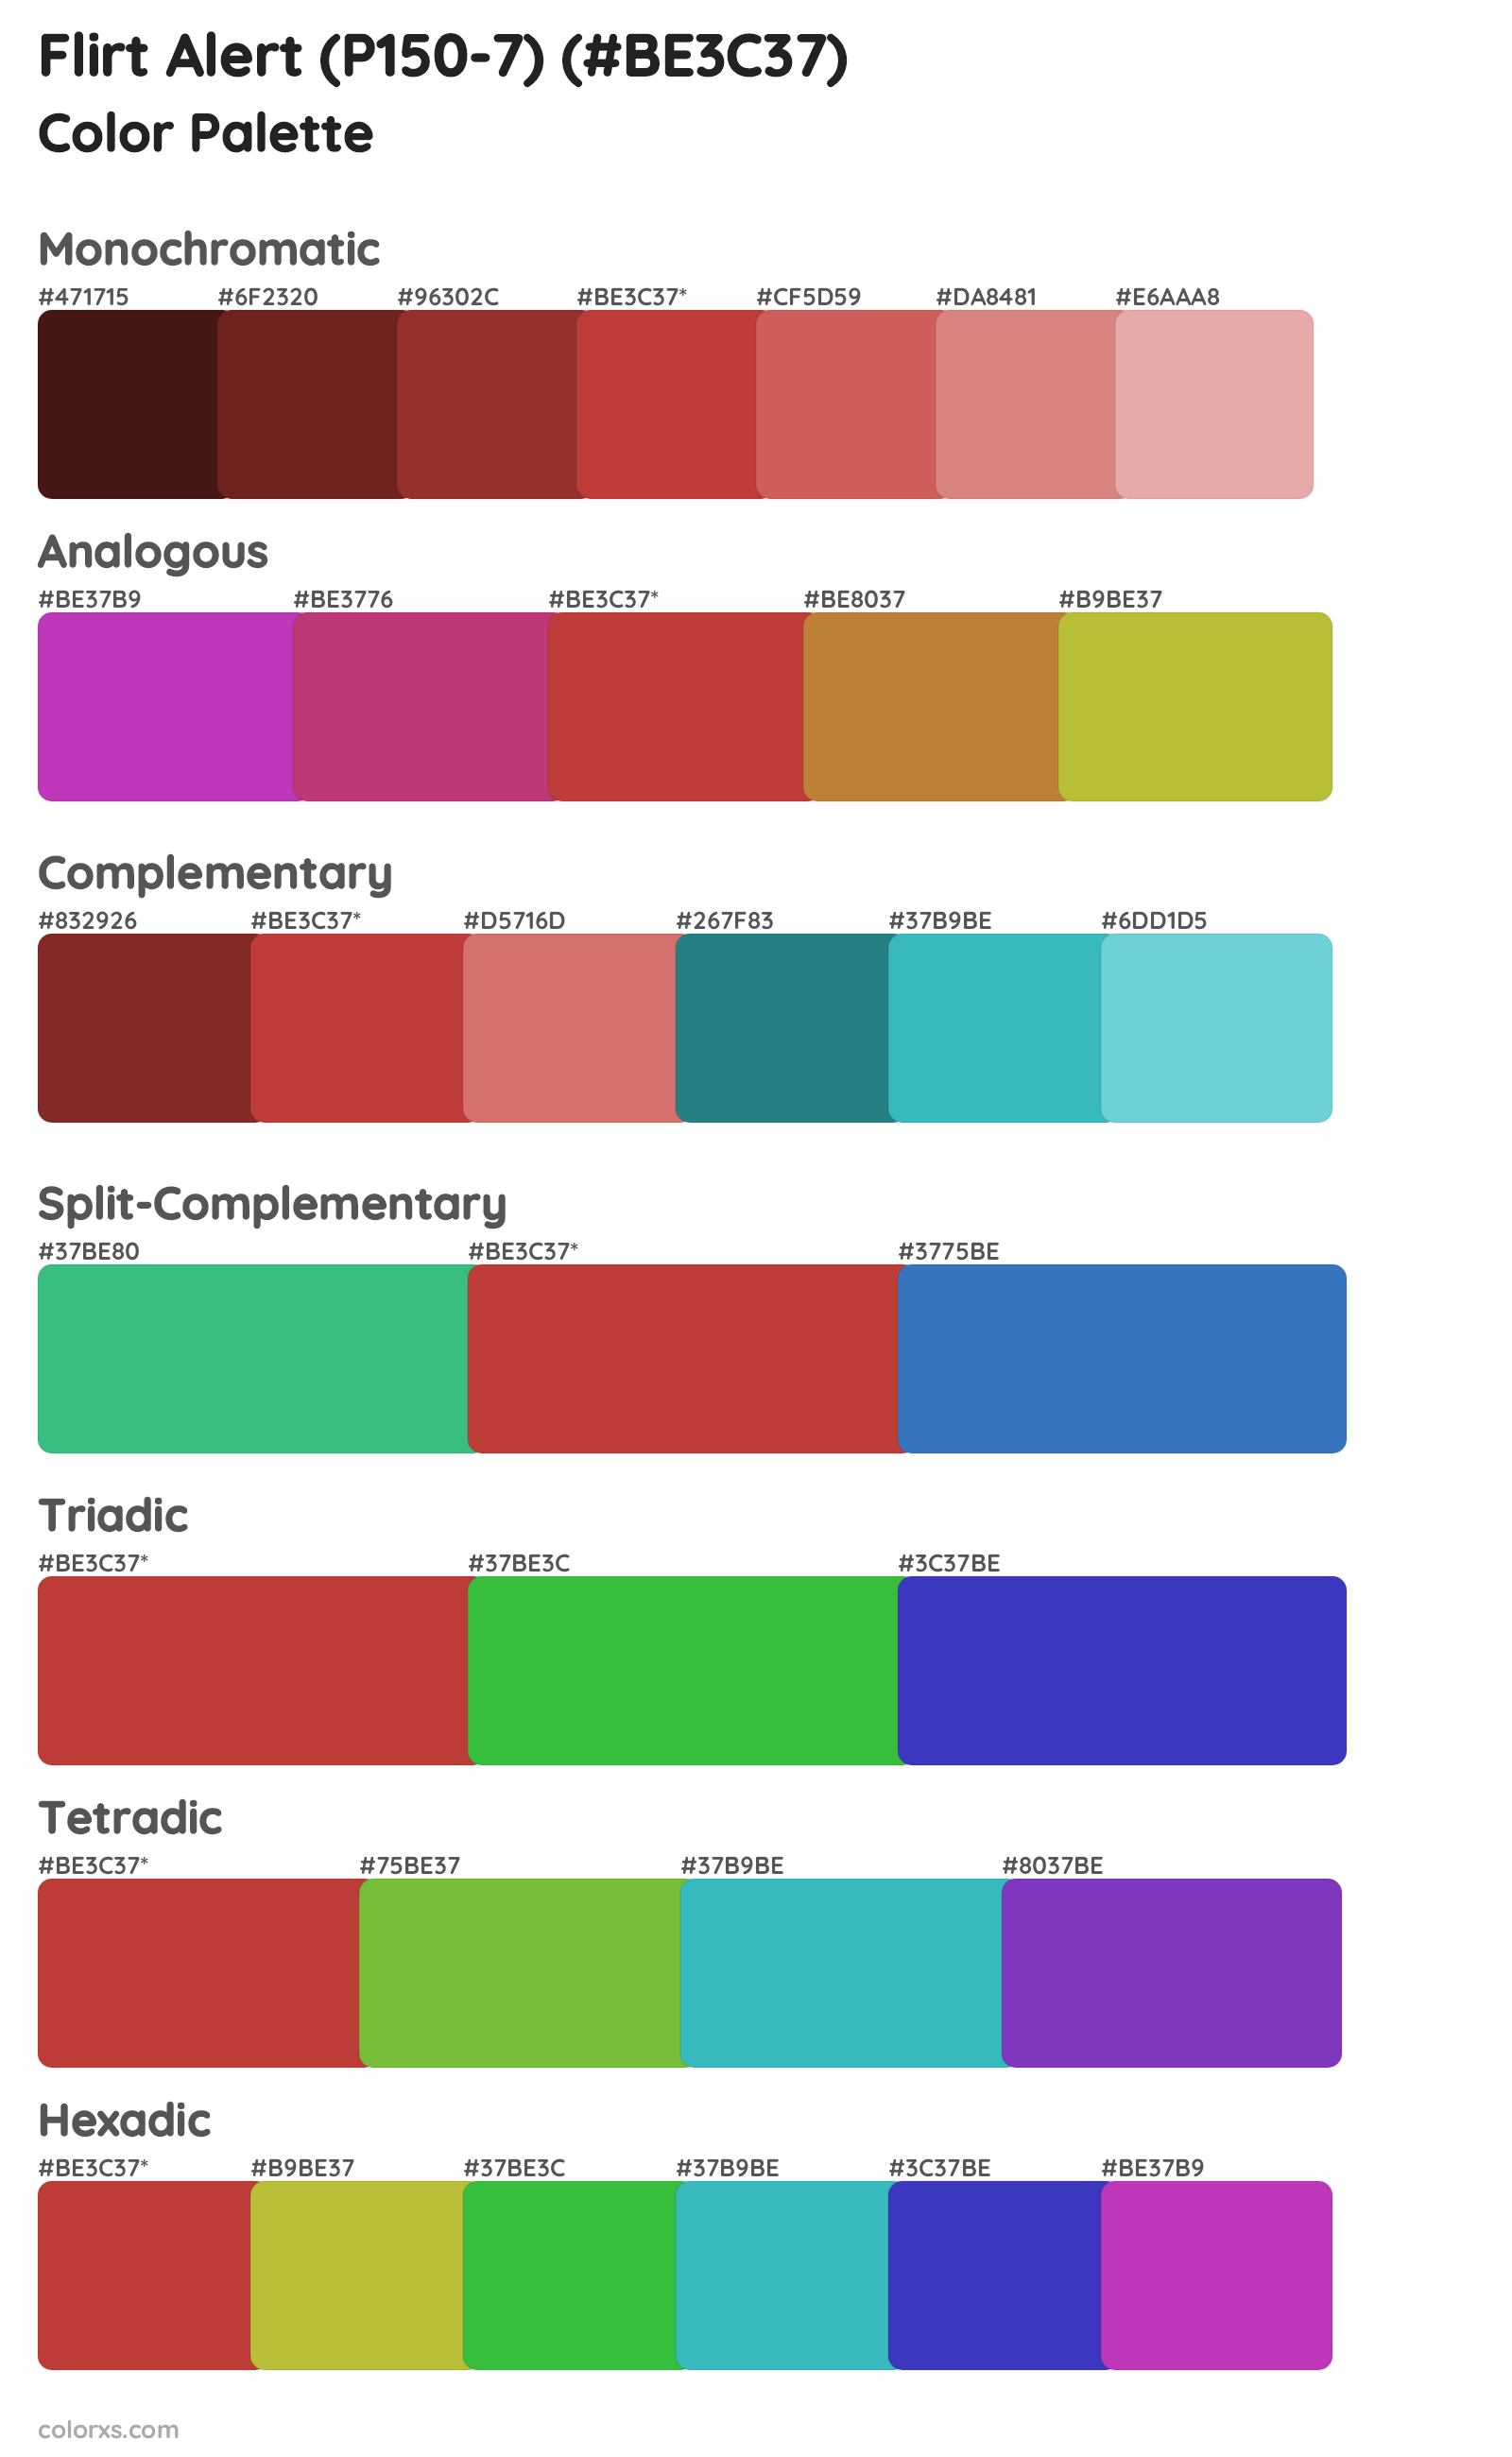 Flirt Alert (P150-7) Color Scheme Palettes